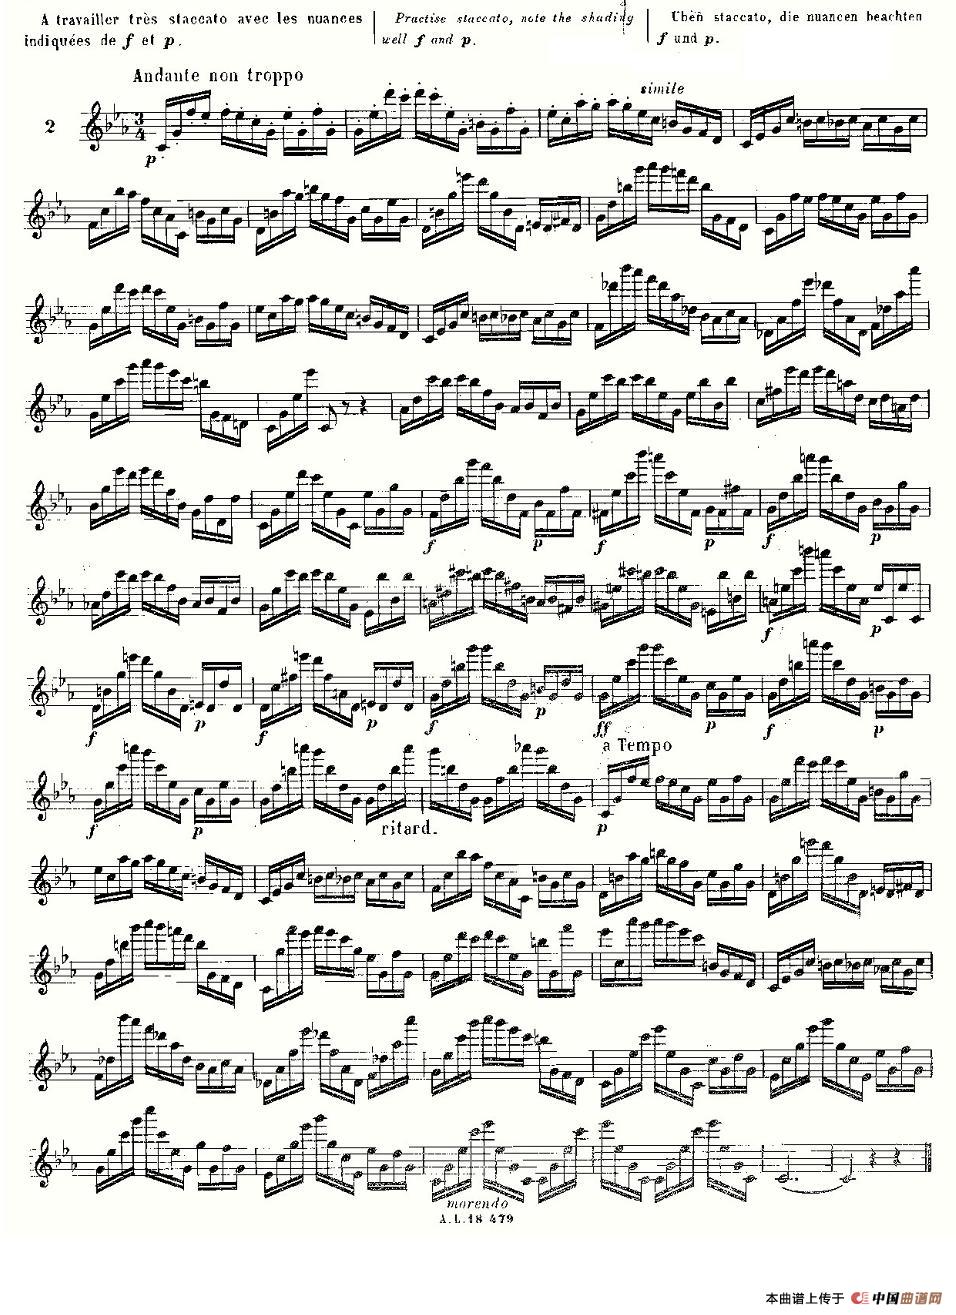 基于维尼亚夫斯基练习曲的10首长笛练习曲之2（